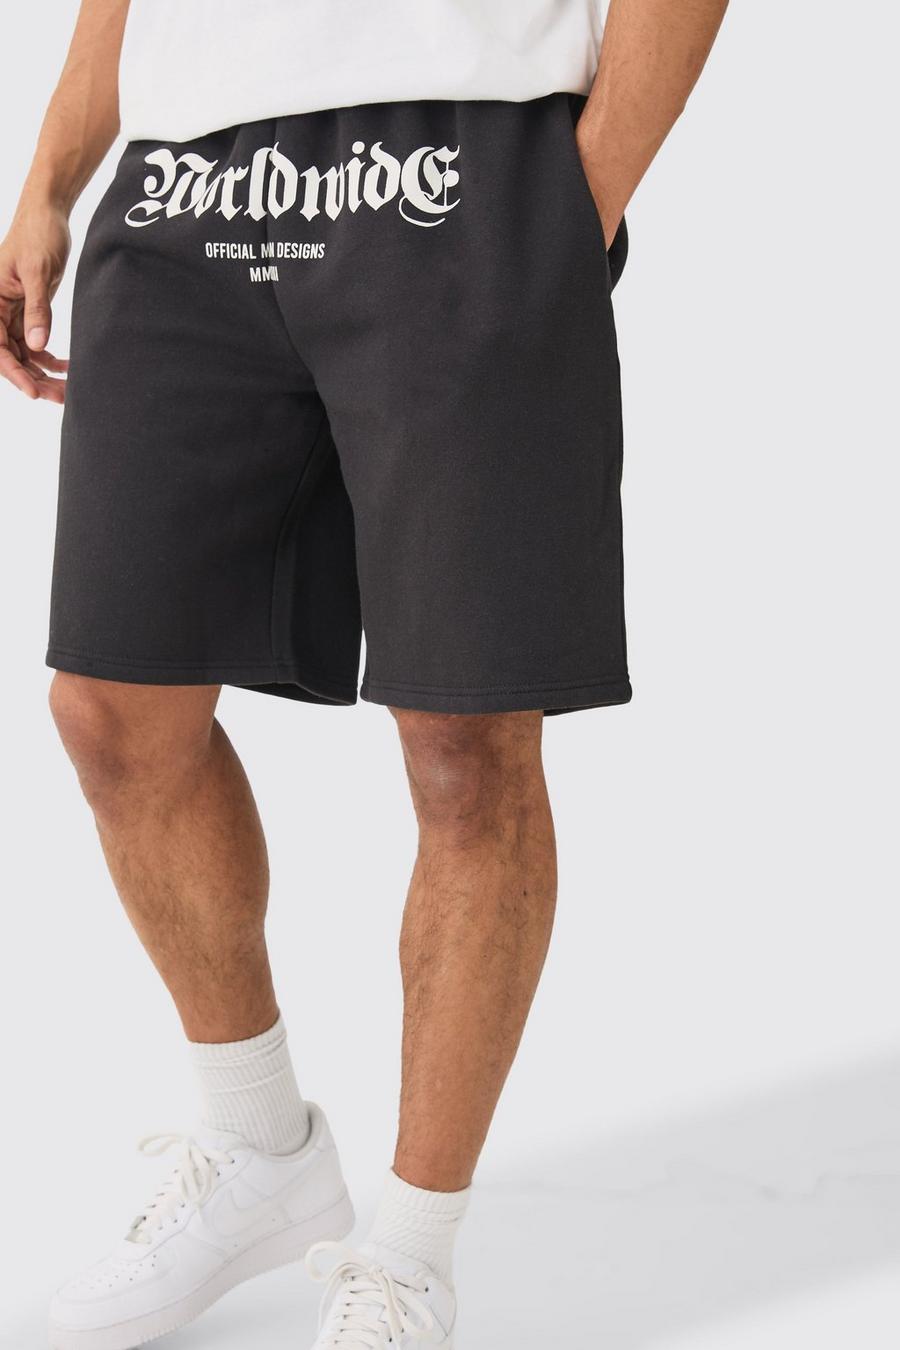 Pantalón corto oversize con estampado Worldwide en la entrepierna, Black